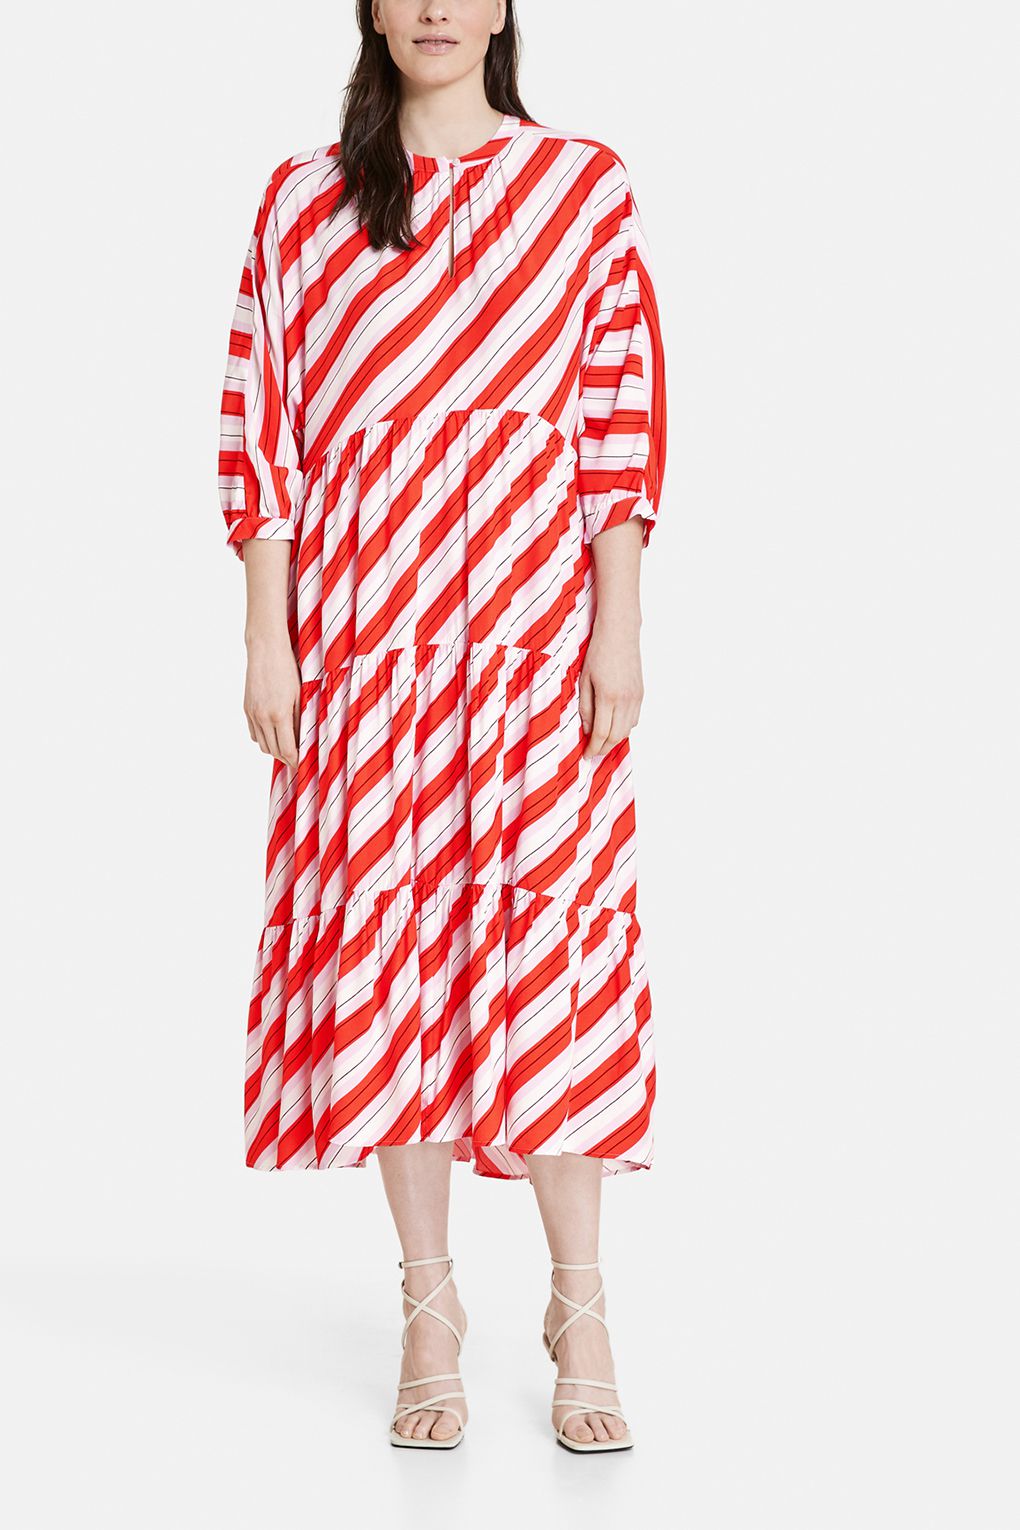 Платье женское Gerry Weber 180016-31412 красное; белое 46 EU